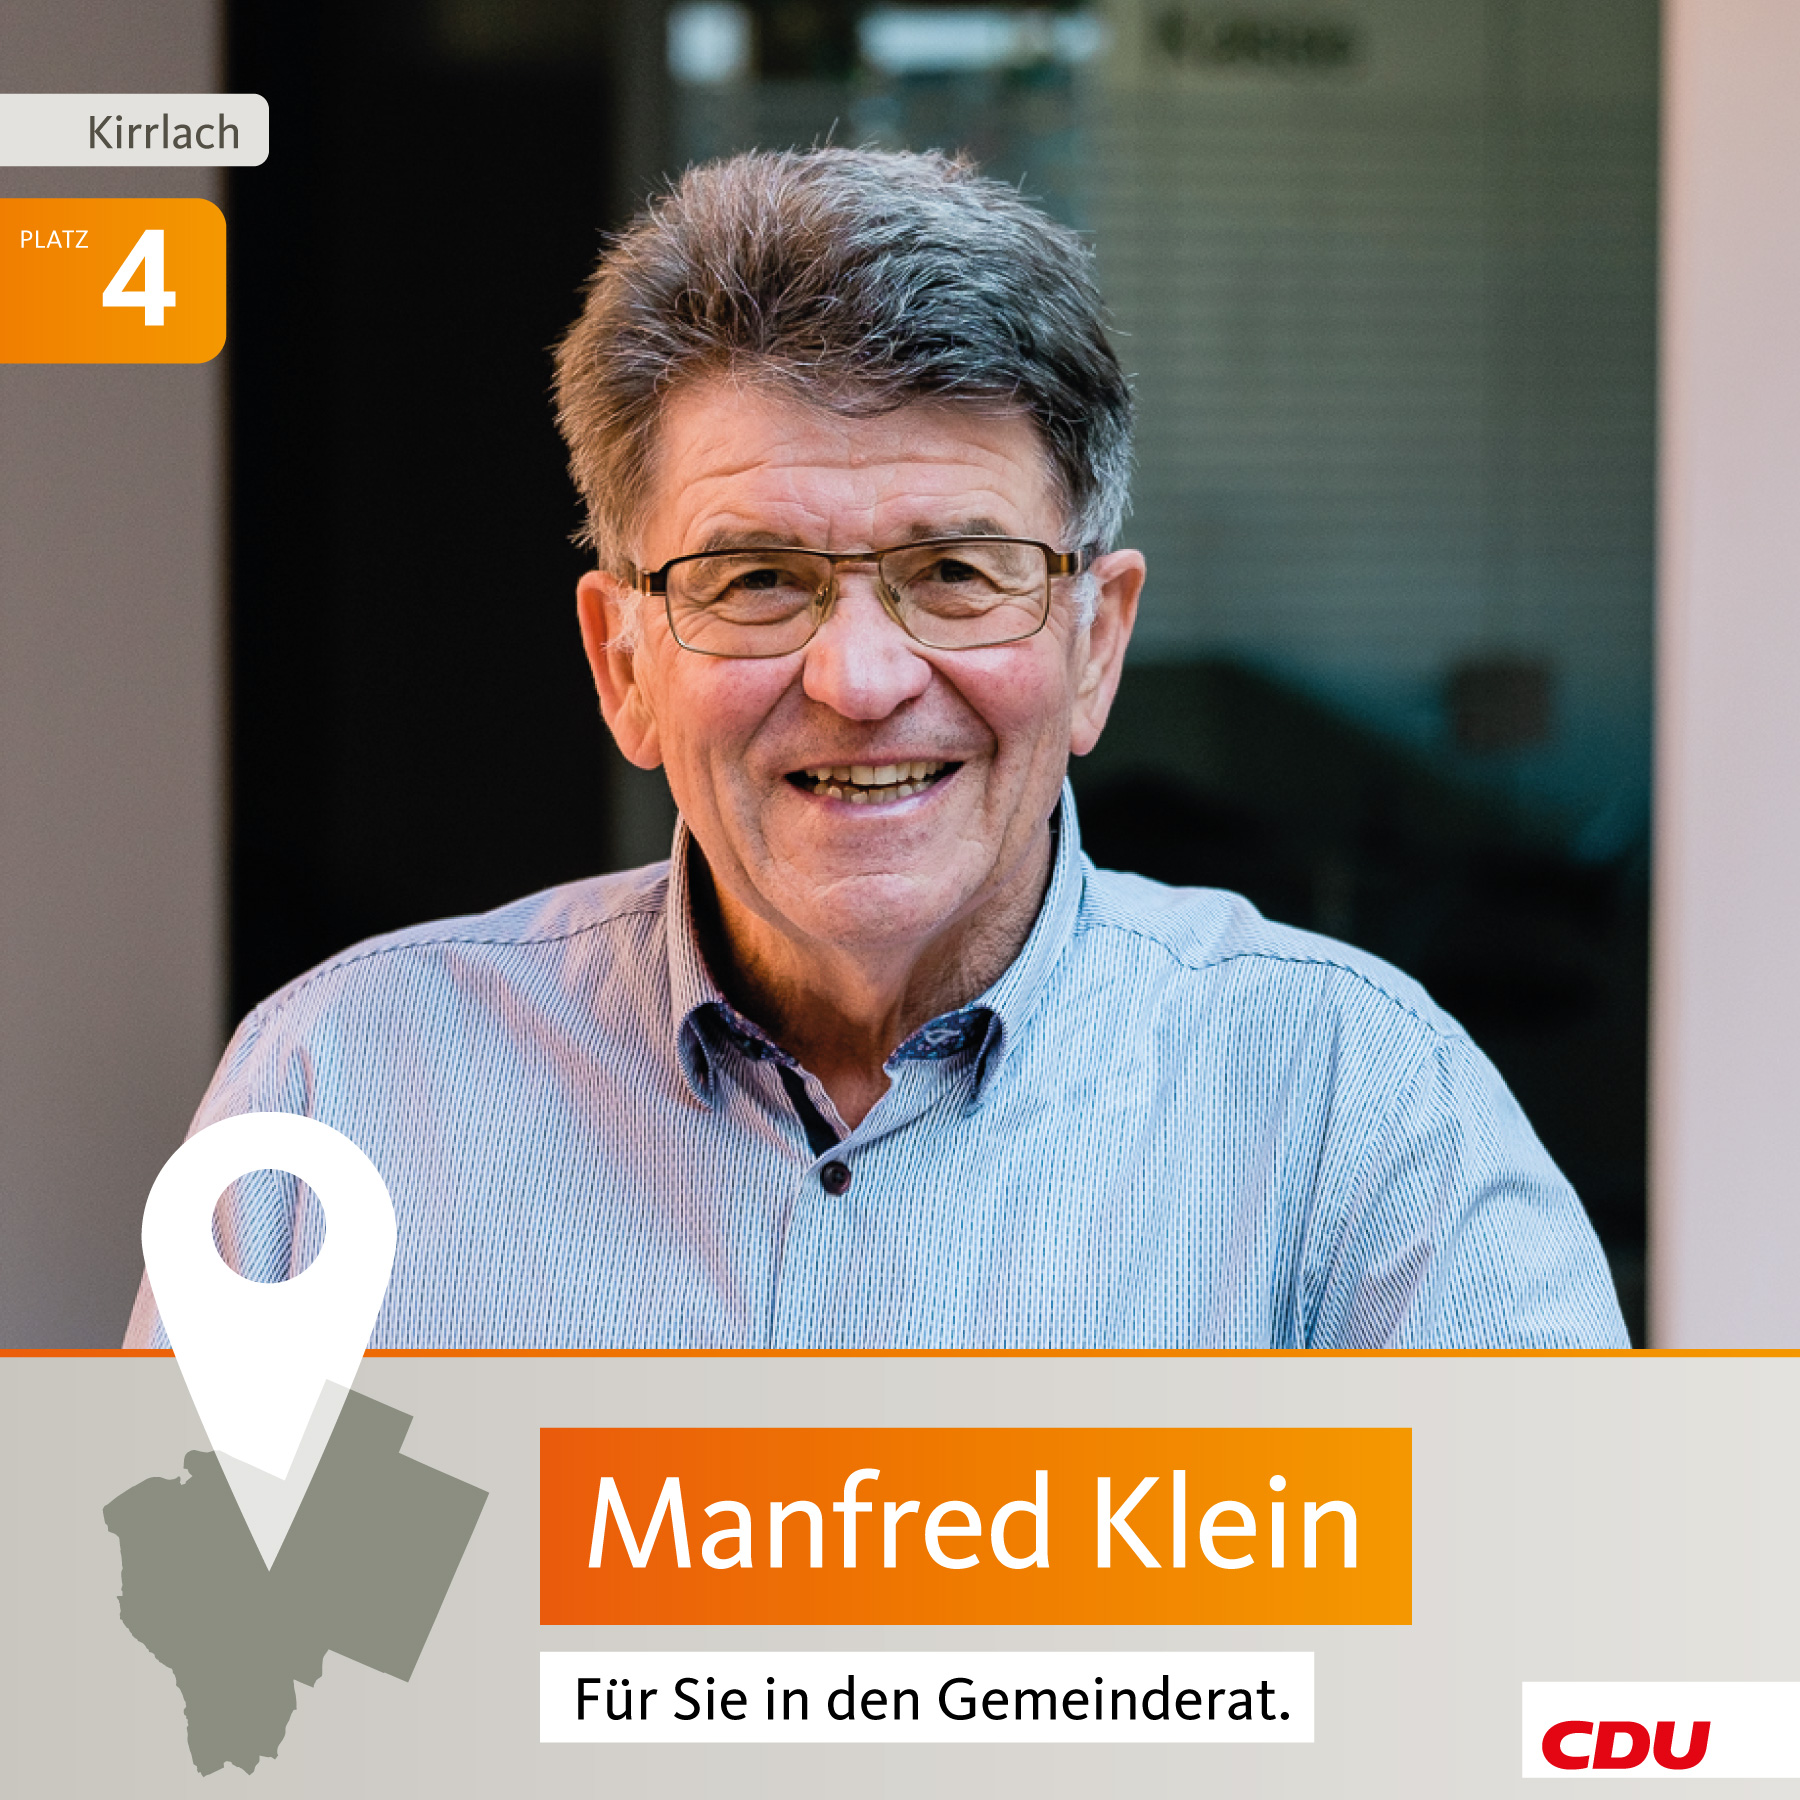 Manfred Klein